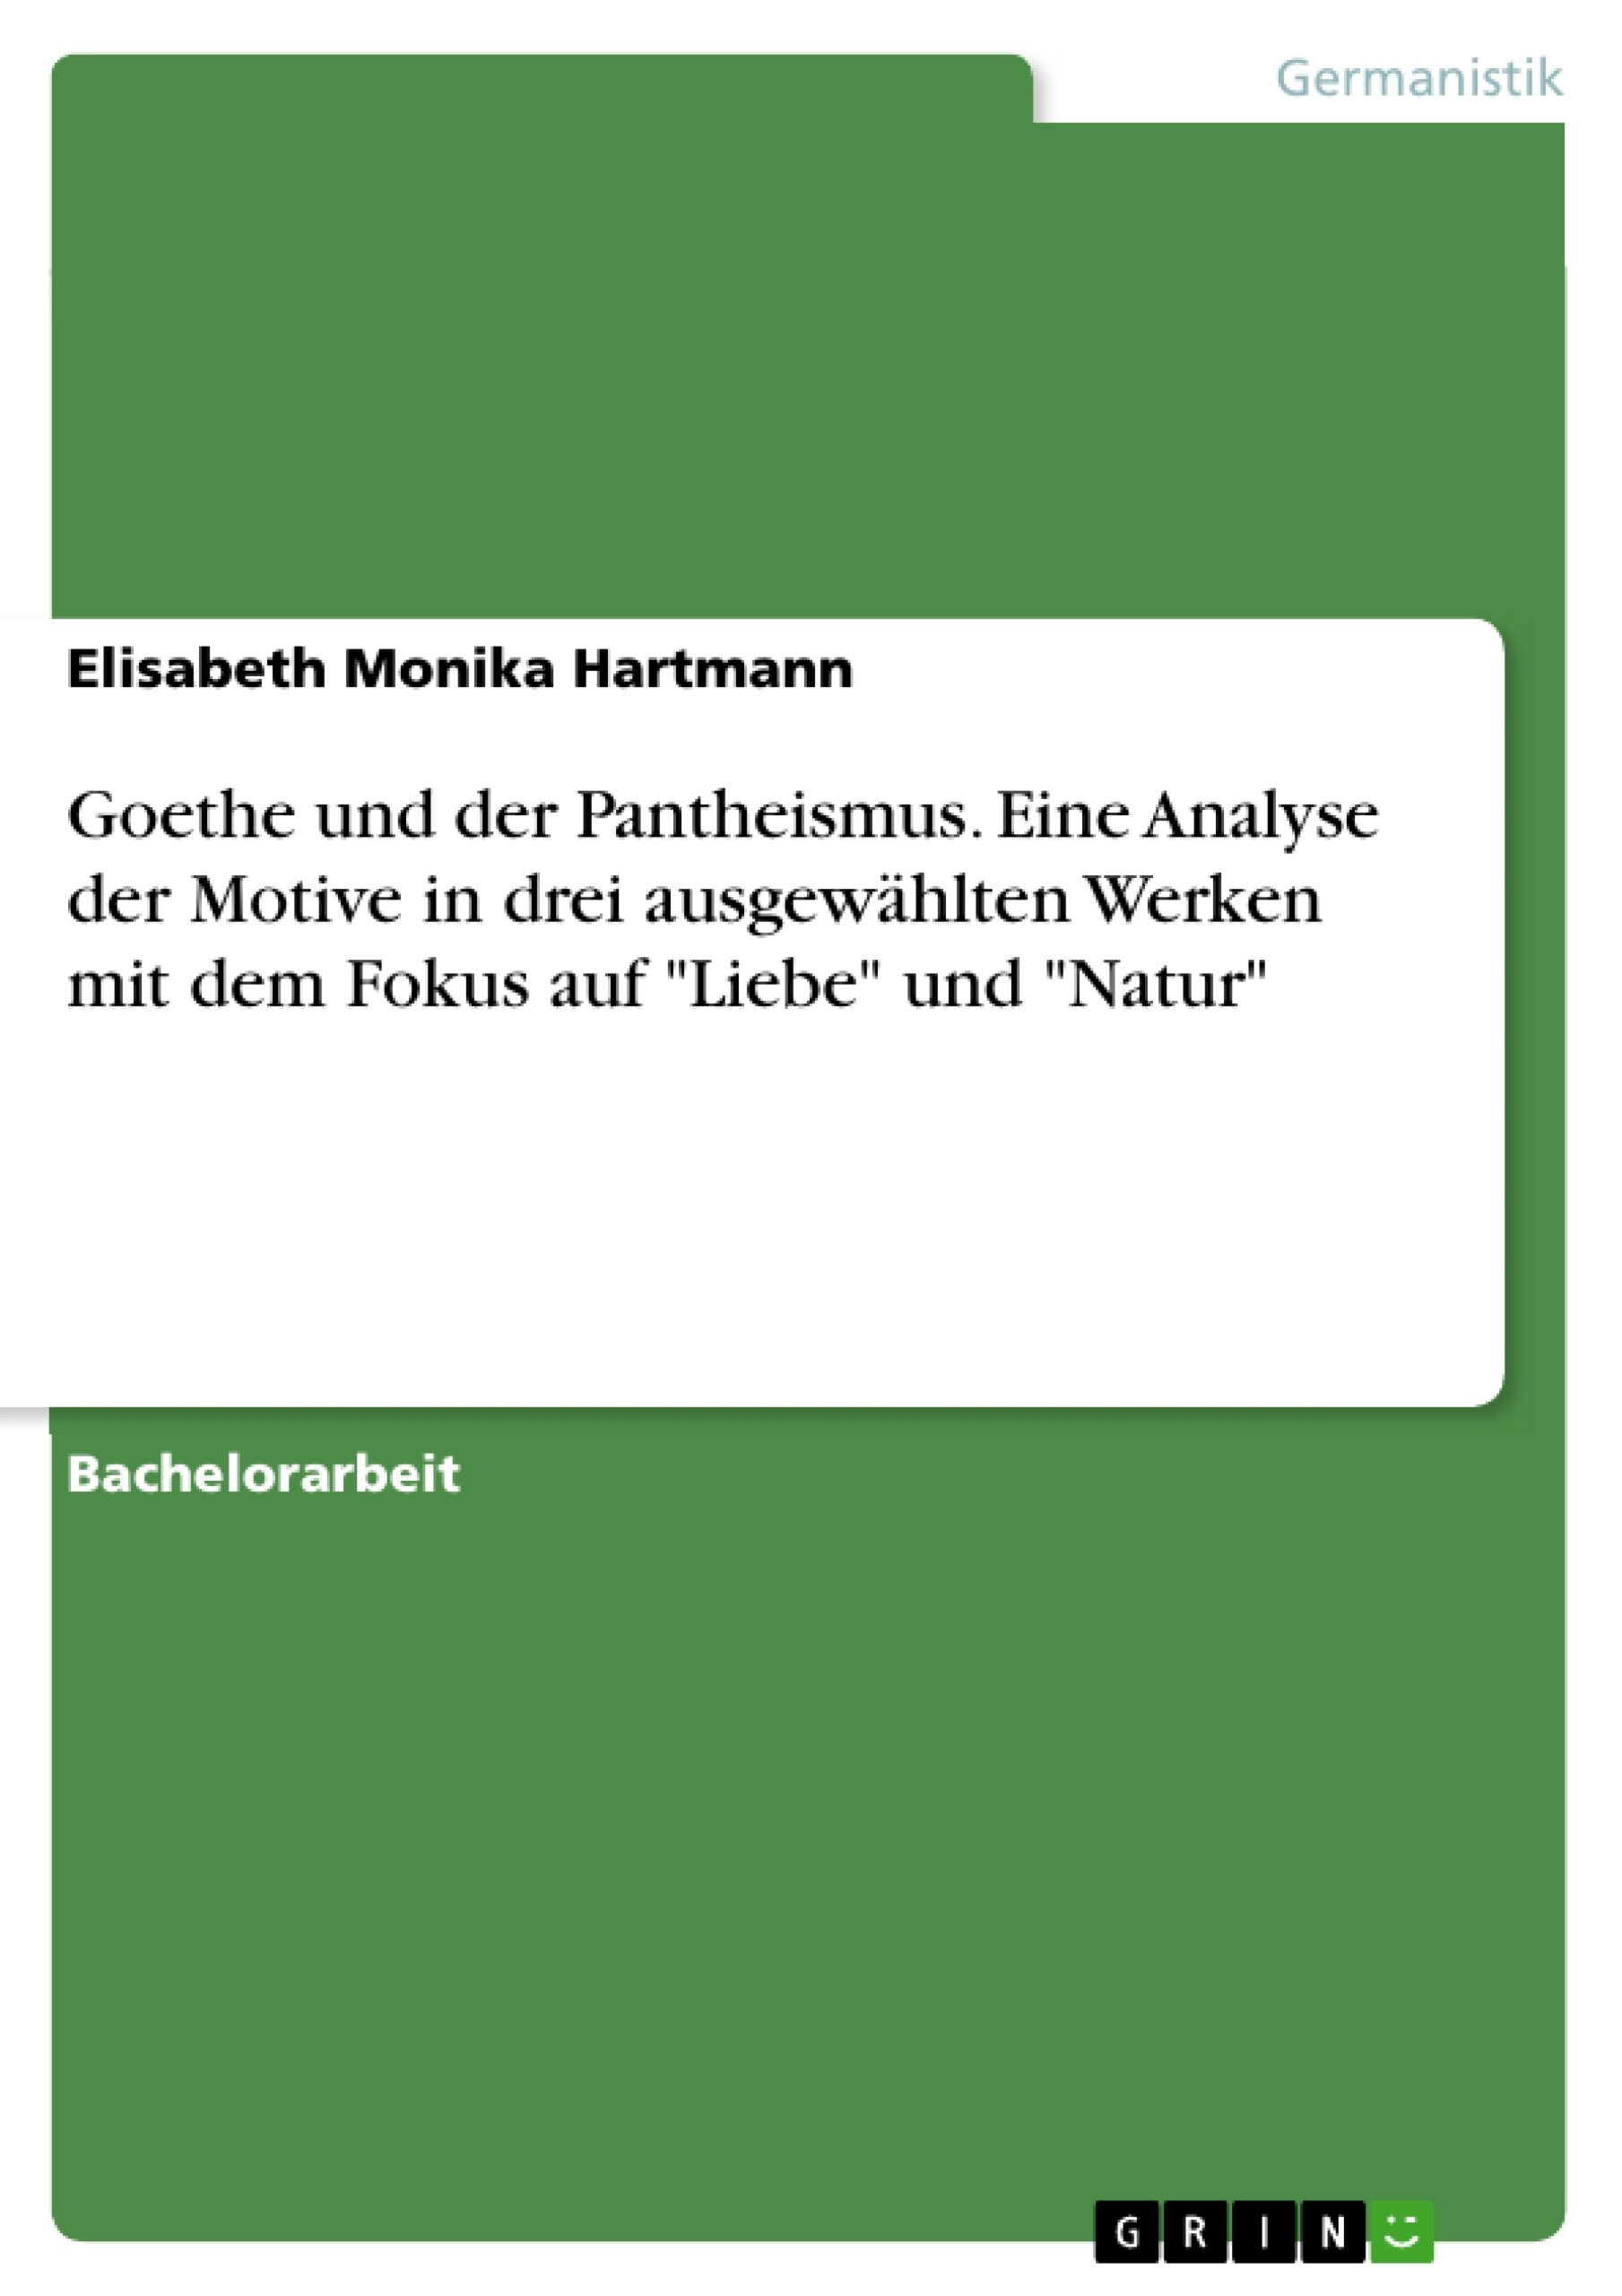 Title: Goethe und der Pantheismus. Eine Analyse der Motive in drei ausgewählten Werken mit dem Fokus auf "Liebe" und "Natur"